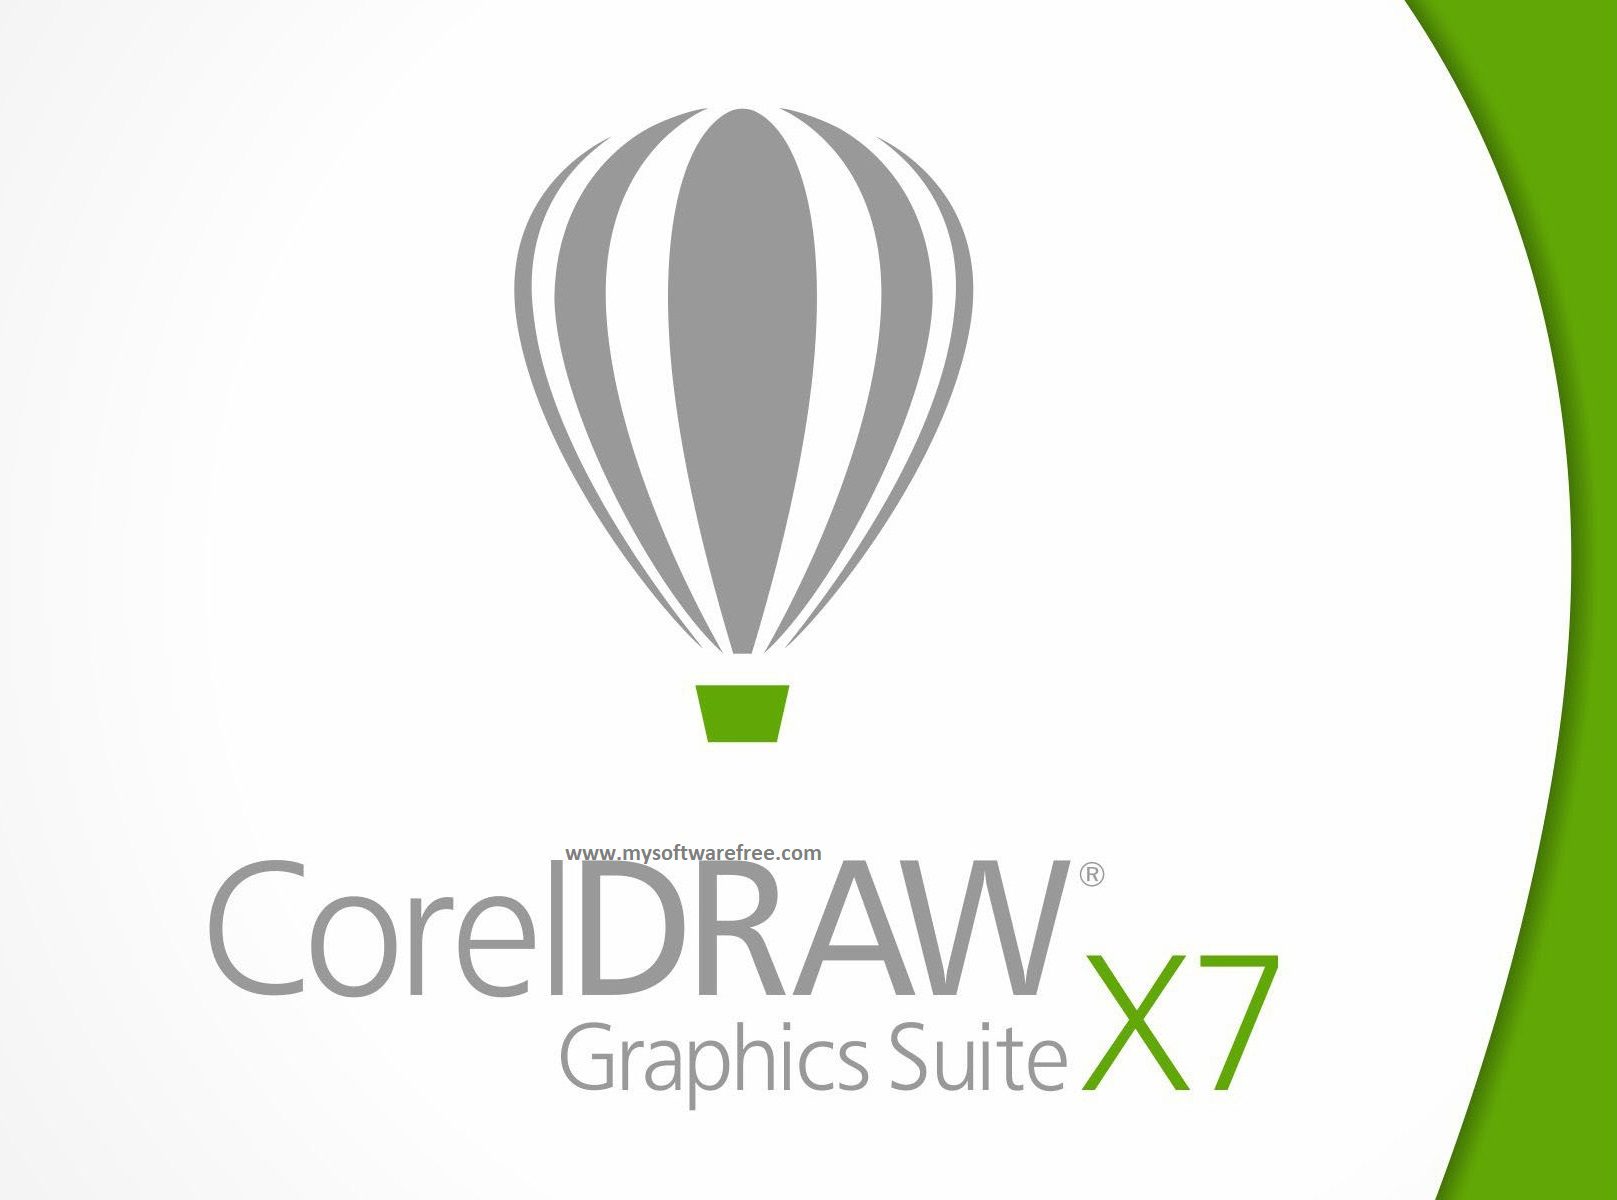 CorelDRAW X7 Free Download